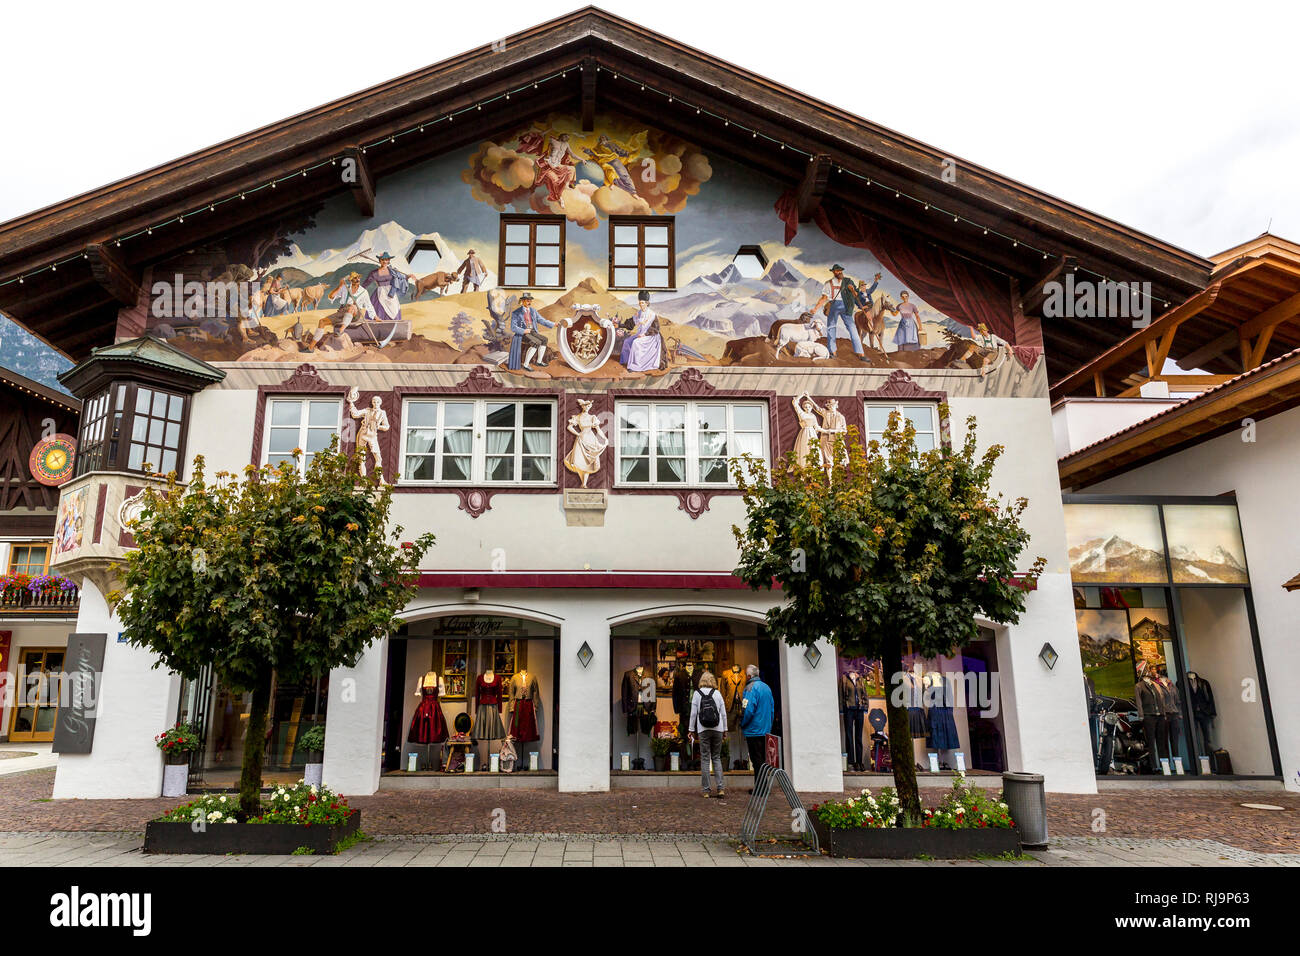 Hausfassade mit Lüftlmalerei, Ortsteil Garmisch, Garmisch-Partenkirchen, Werdenfelser Land, Oberbayern, Bayern, Deutschland, Europa Stock Photo